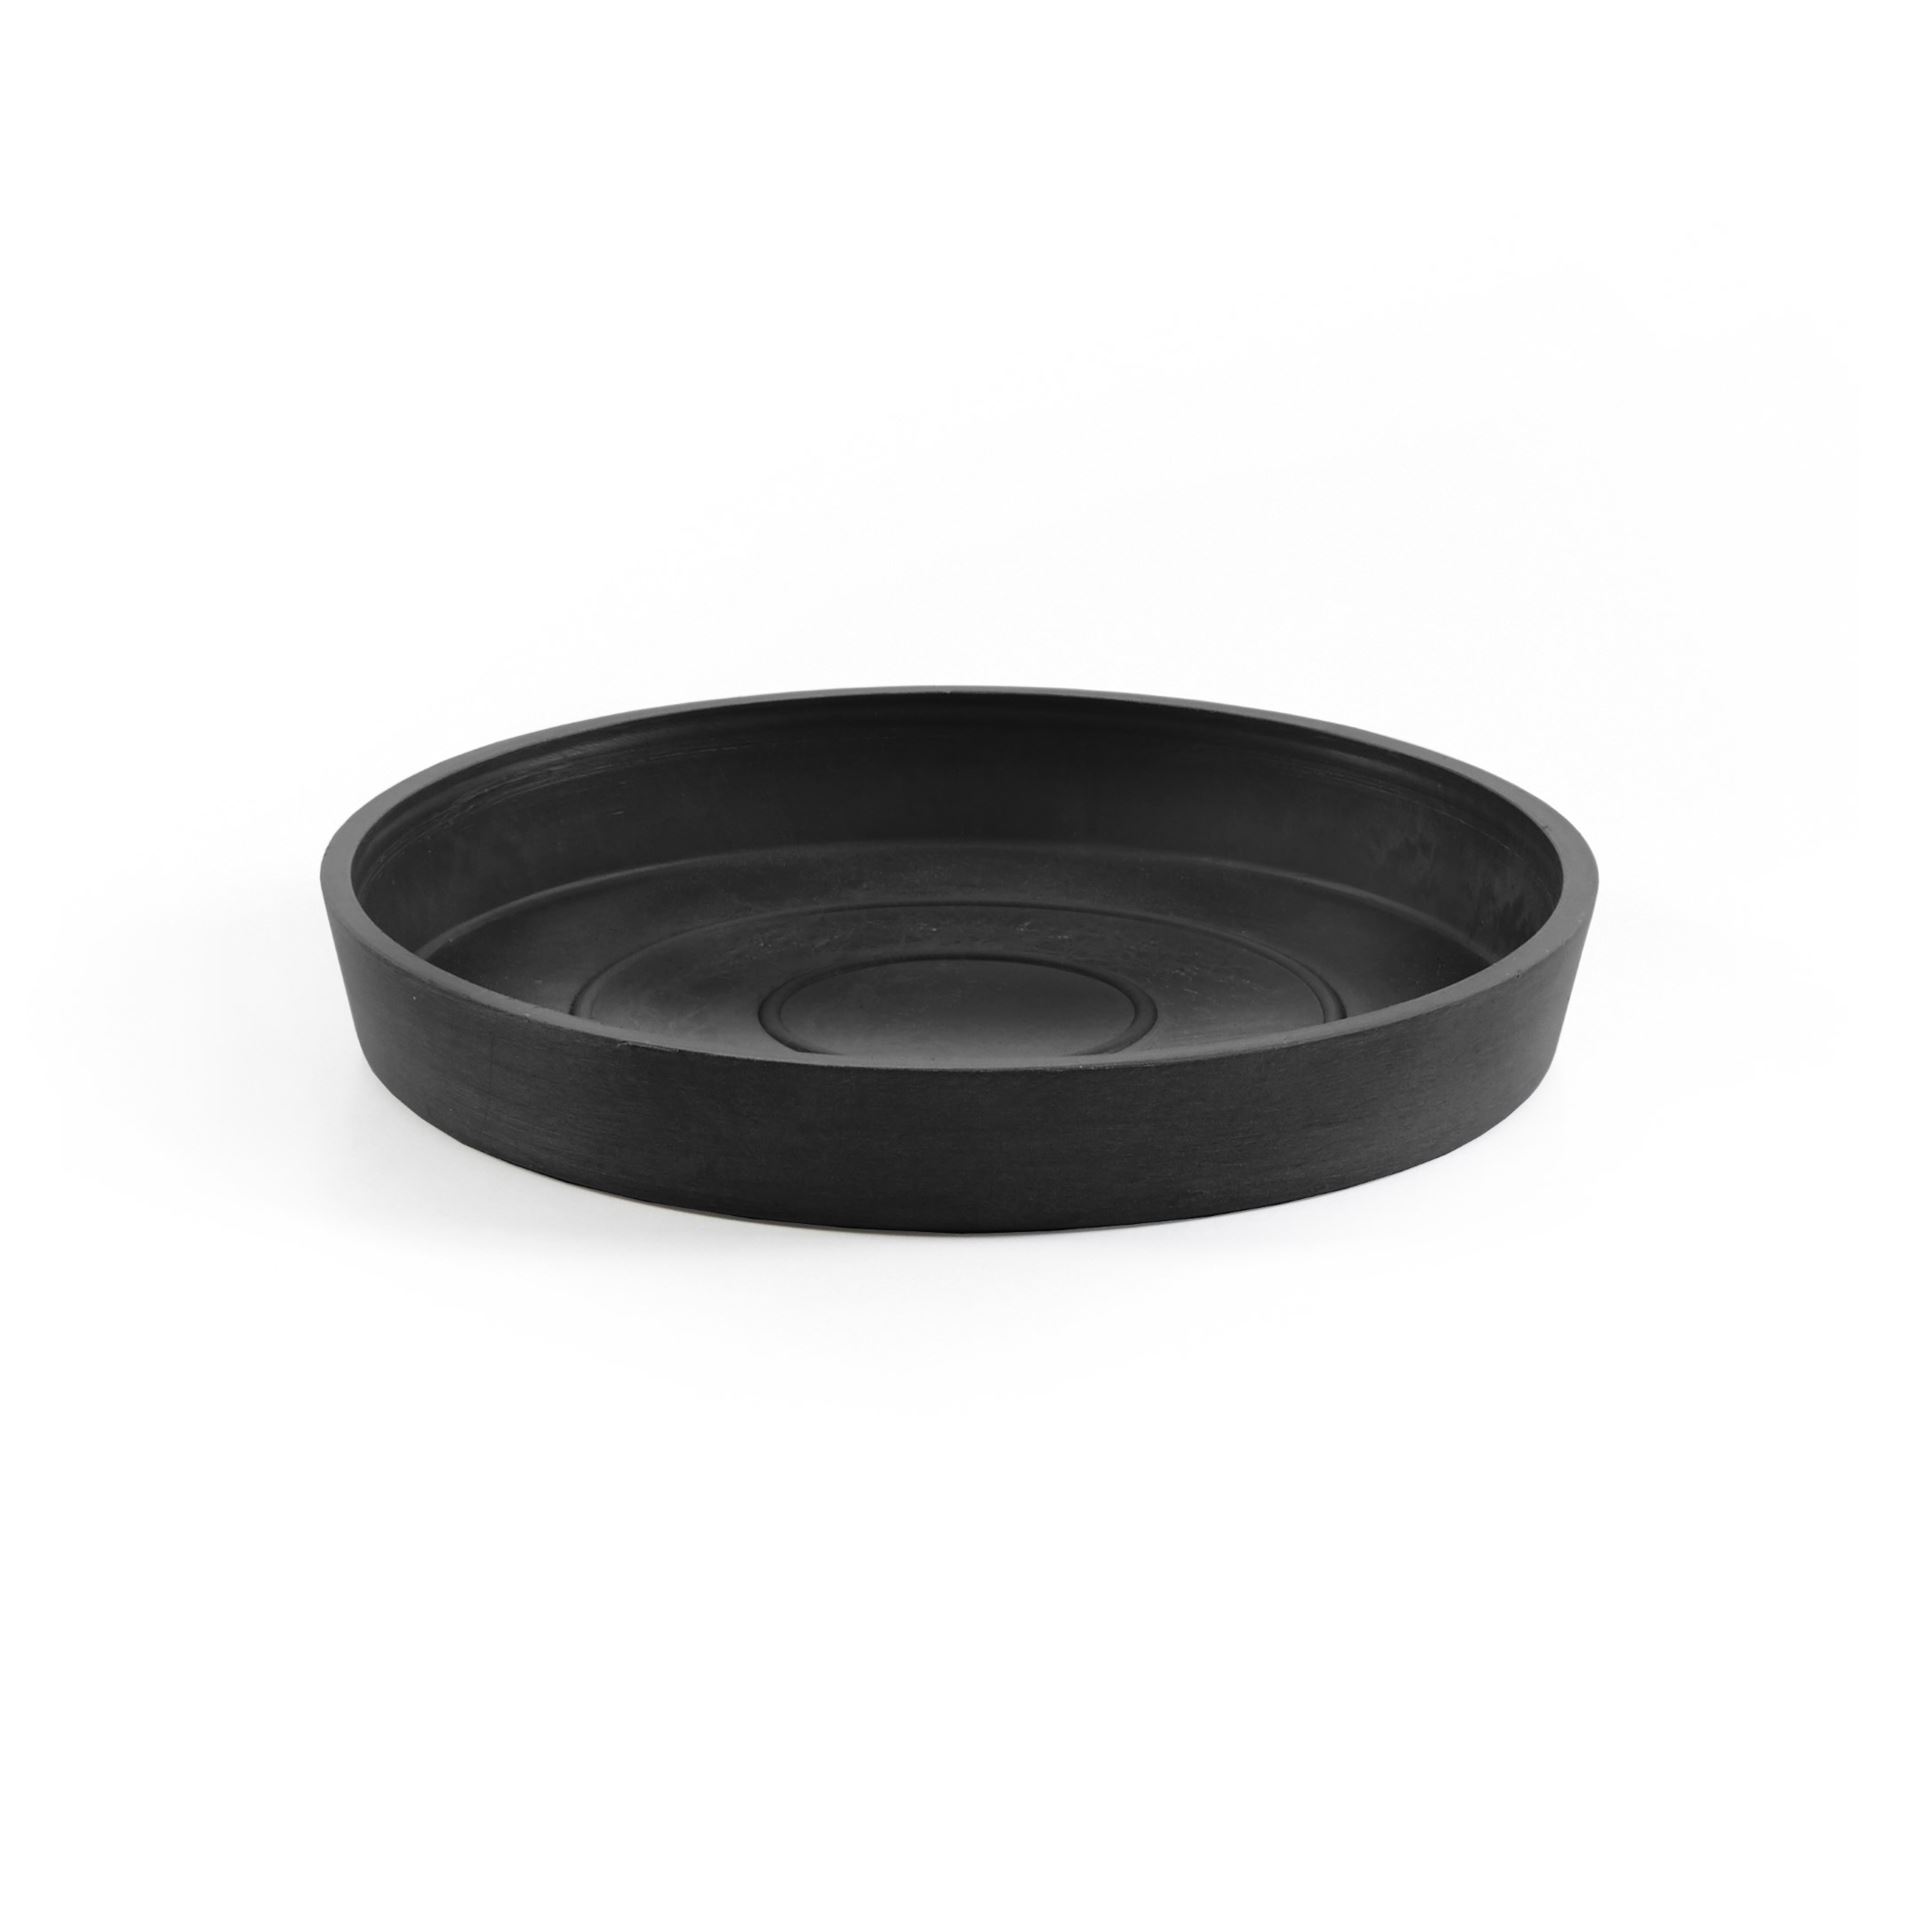 Ecopots Saucer Round - Dark Grey - Ø18 x H2,5 cm - Round dark grey saucer with water reservoir